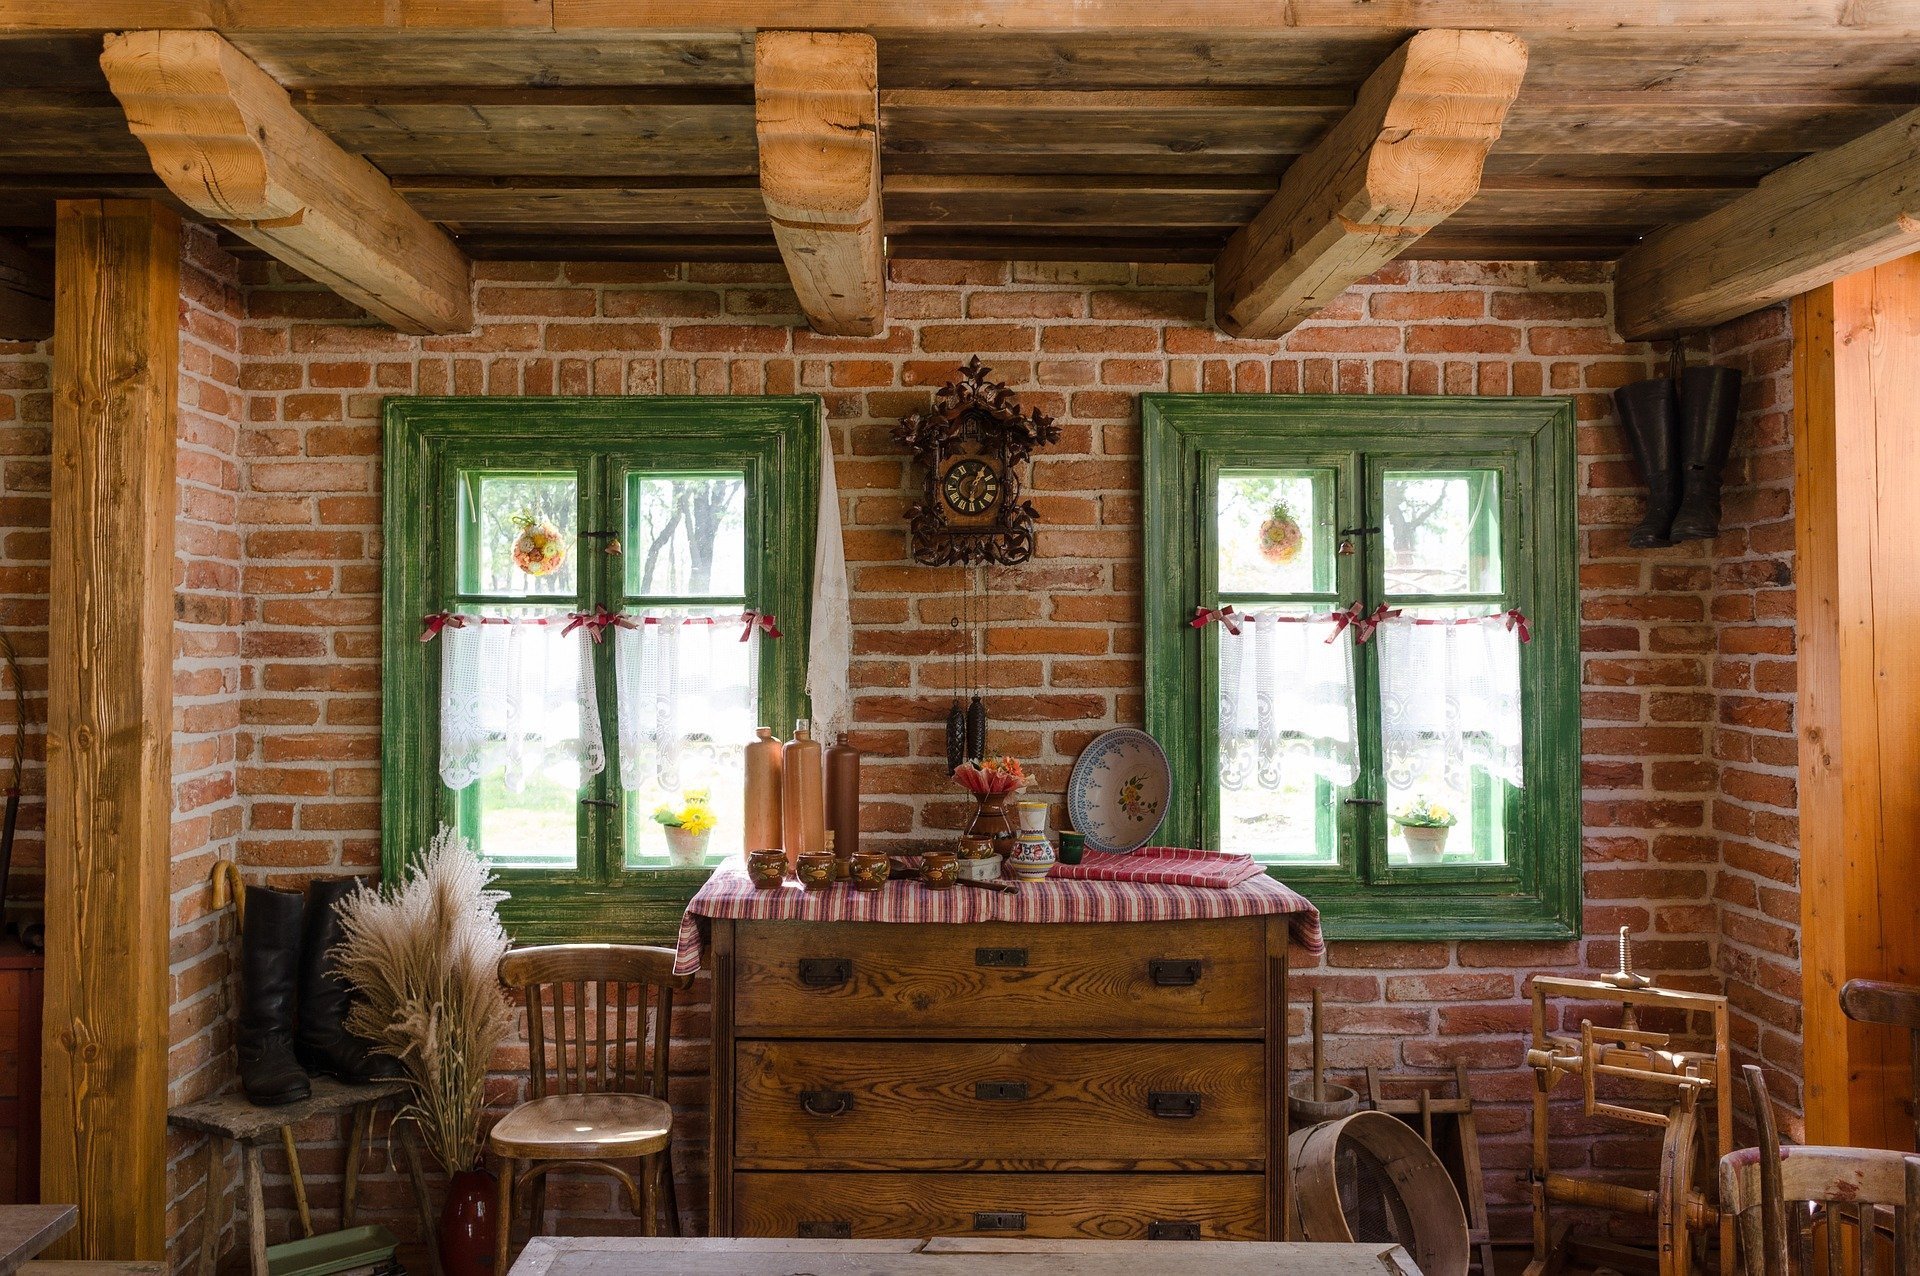 Дизайн интерьера деревянного дома в максимально естественном, природном стиле.